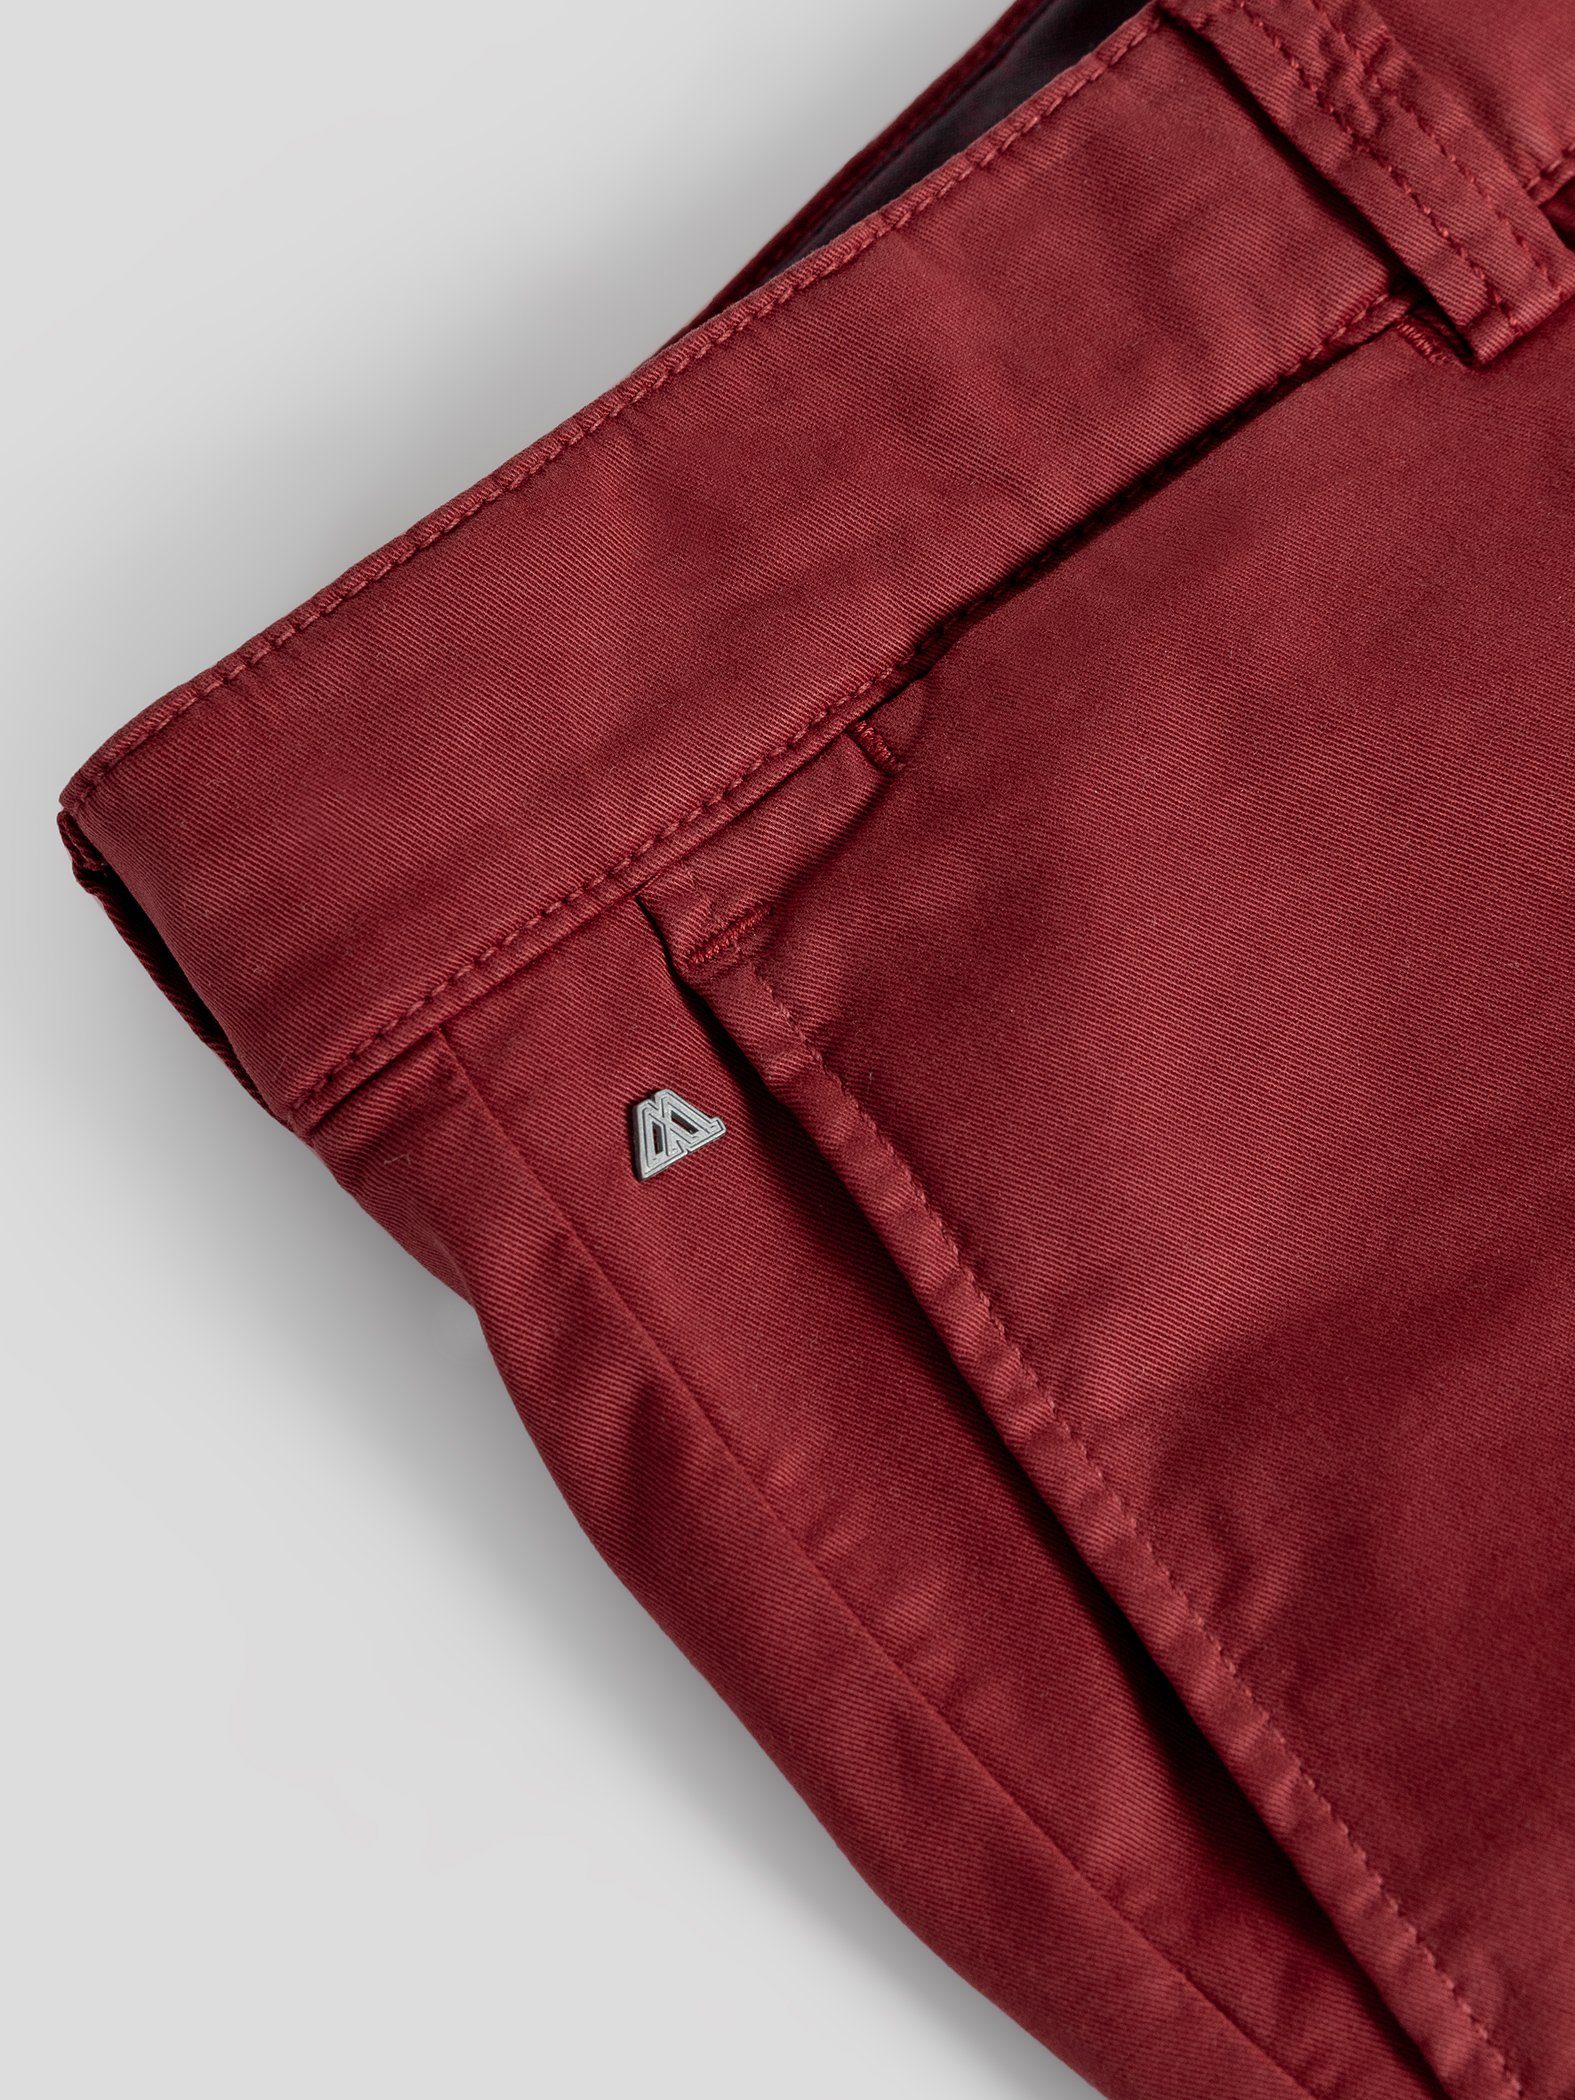 TwoMates Shorts Shorts mit elastischem Farbauswahl, GOTS-zertifiziert Bund, Rot